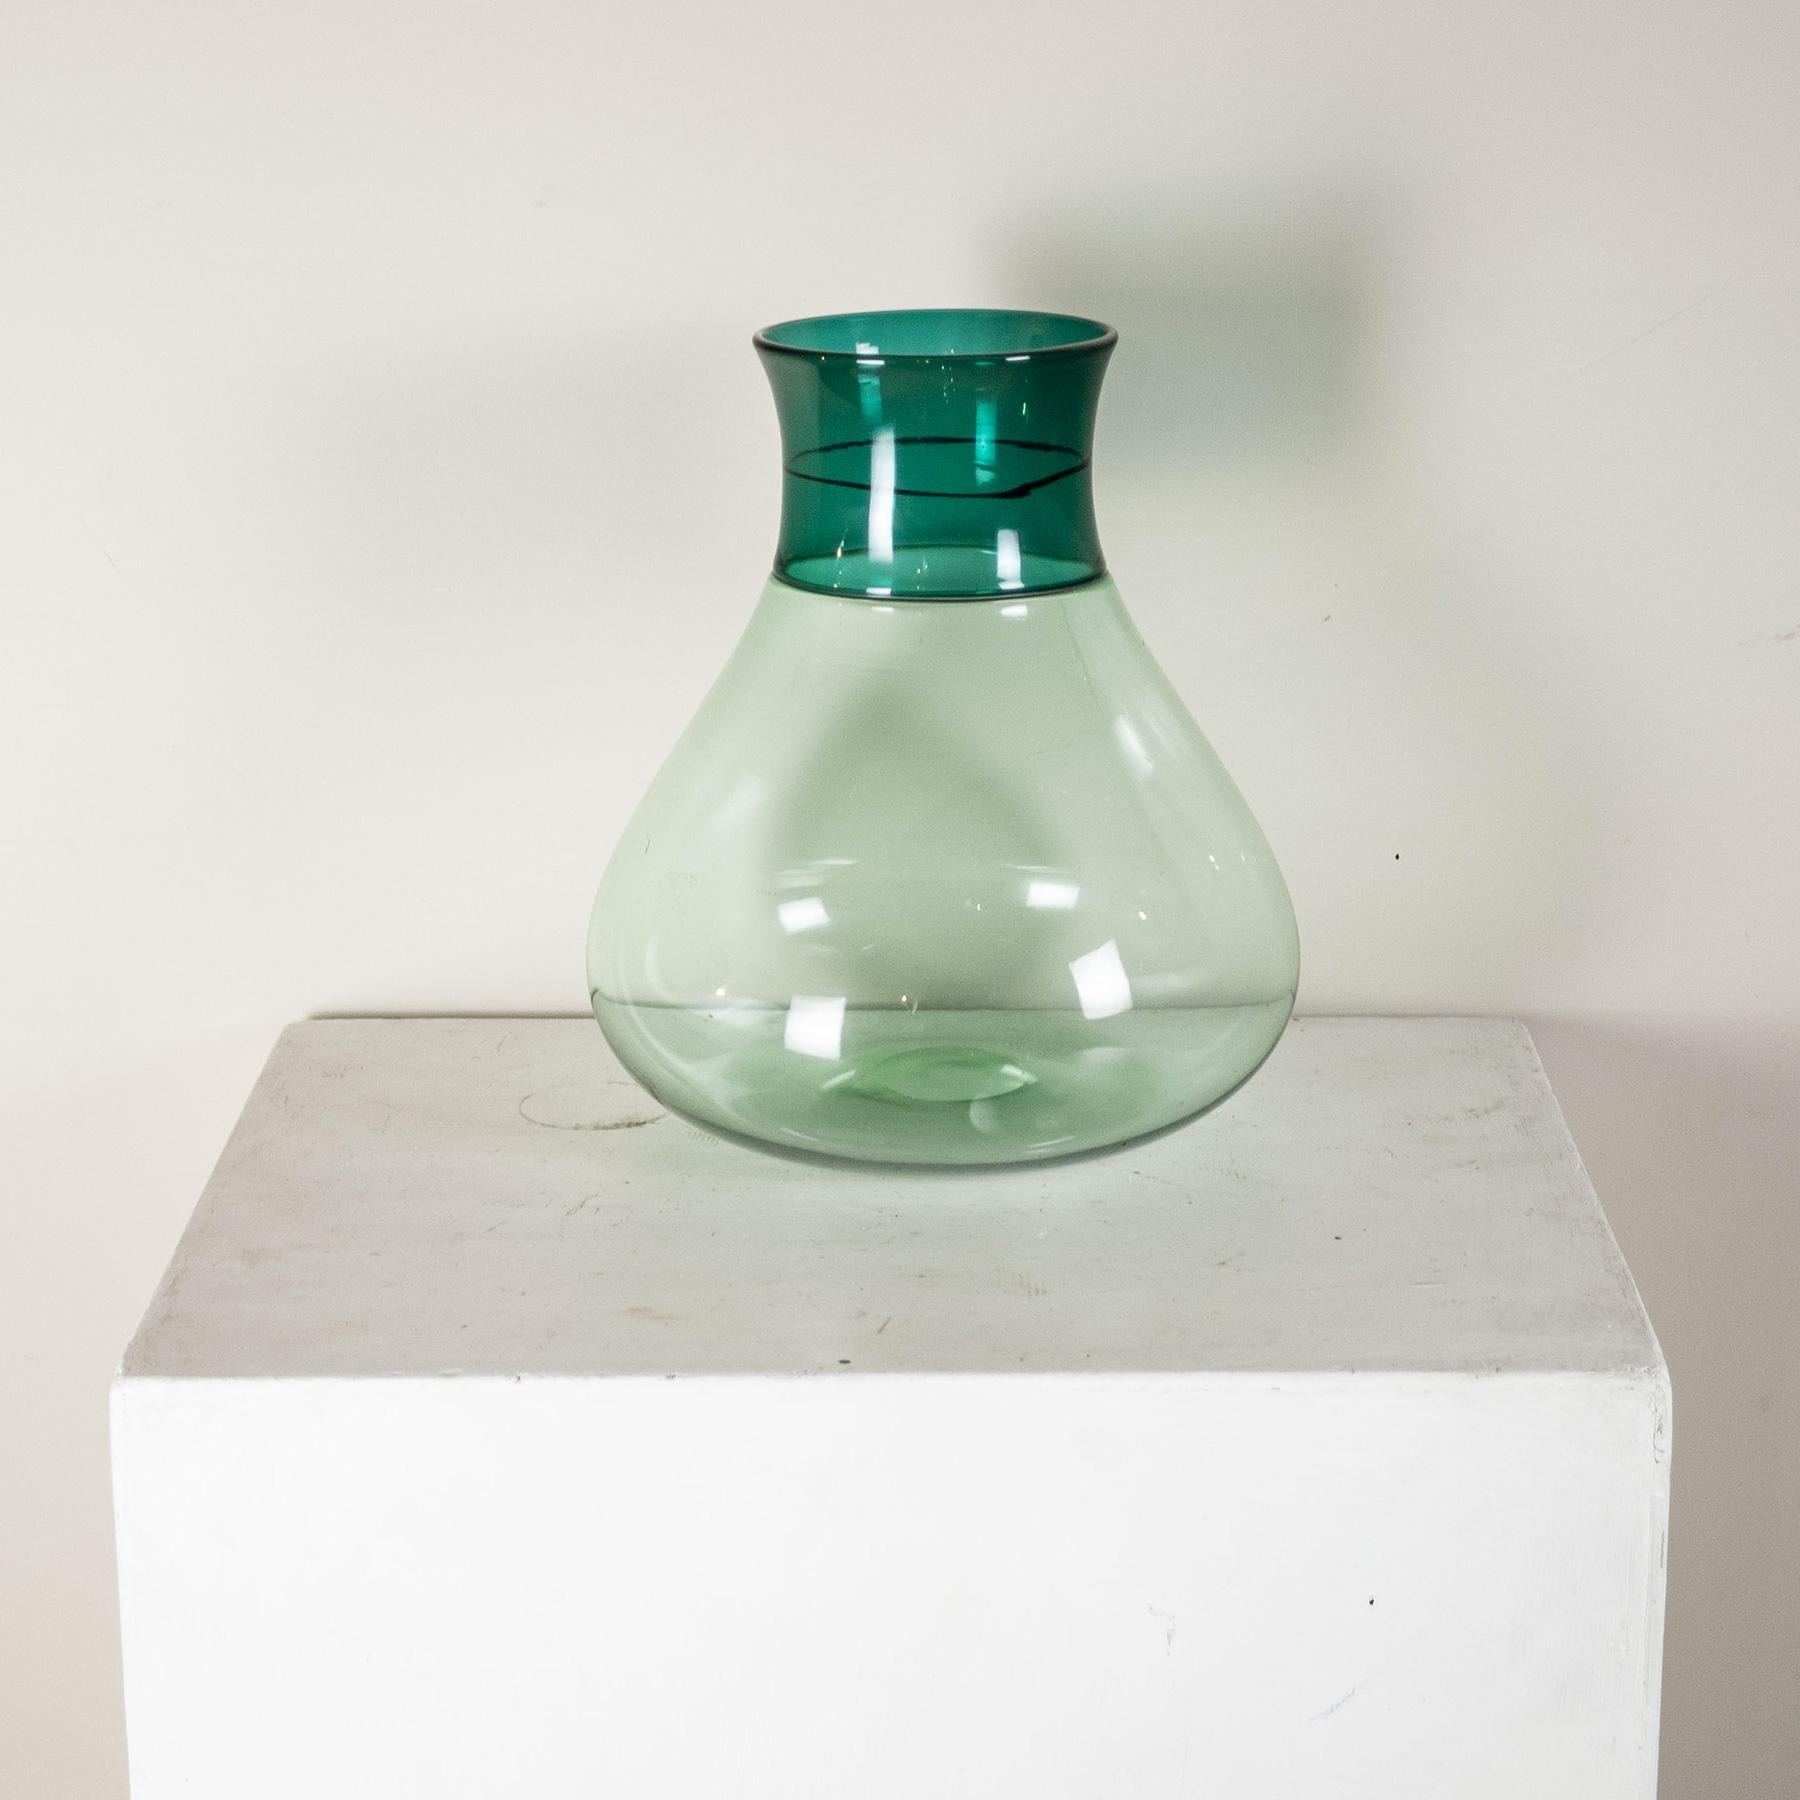 Vase de la série Colletti en verre soufflé verdâtre avec bande incalmo bicolore décorée par le designer Alessandro Diaz de Santillana. Signature gravée de Venini.
Après avoir obtenu son diplôme d'architecte à Venise, il s'est immédiatement consacré